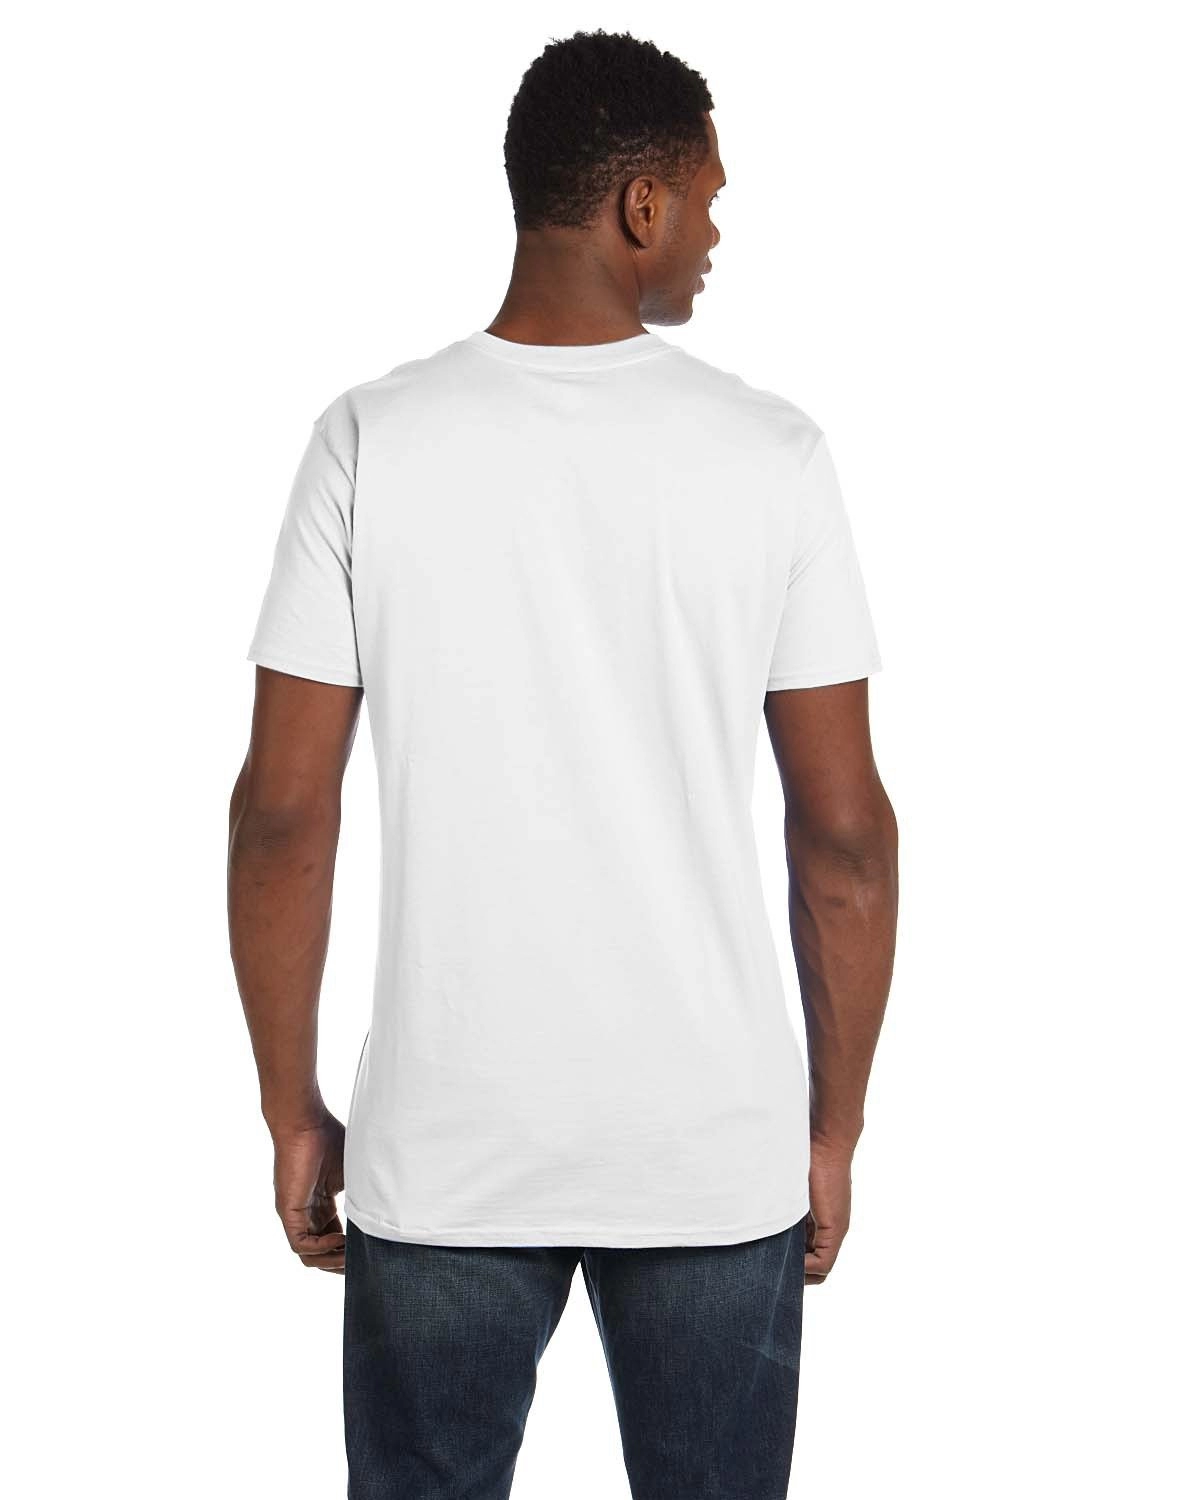 Hanes 4980 Ring-Spun T-shirt White - From $2.28